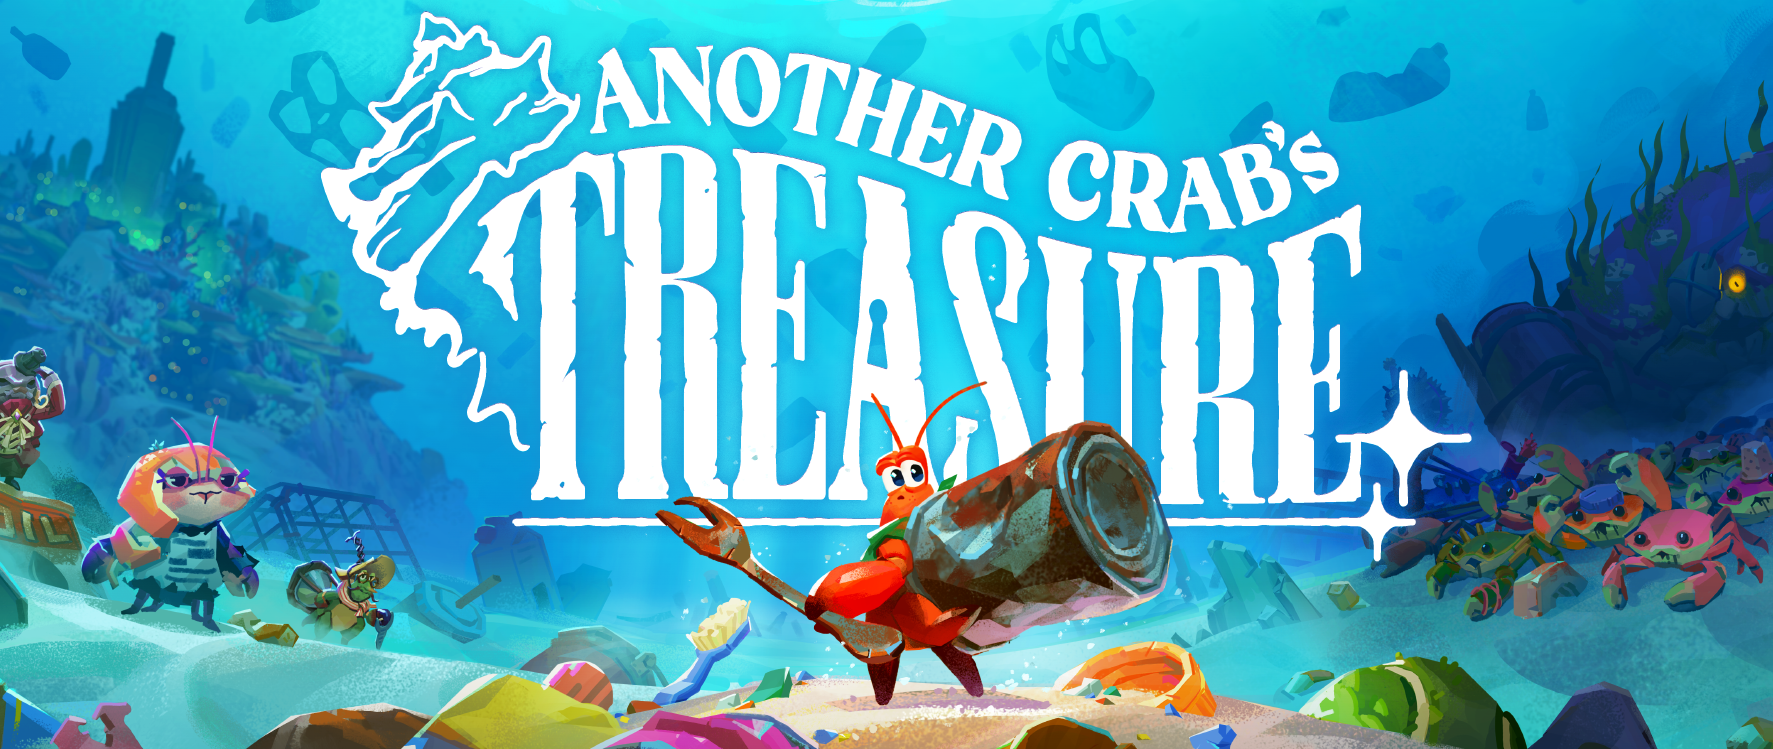 Another Crabs Treasure - №12 зачищаем Долину Обломков от Мусора!)